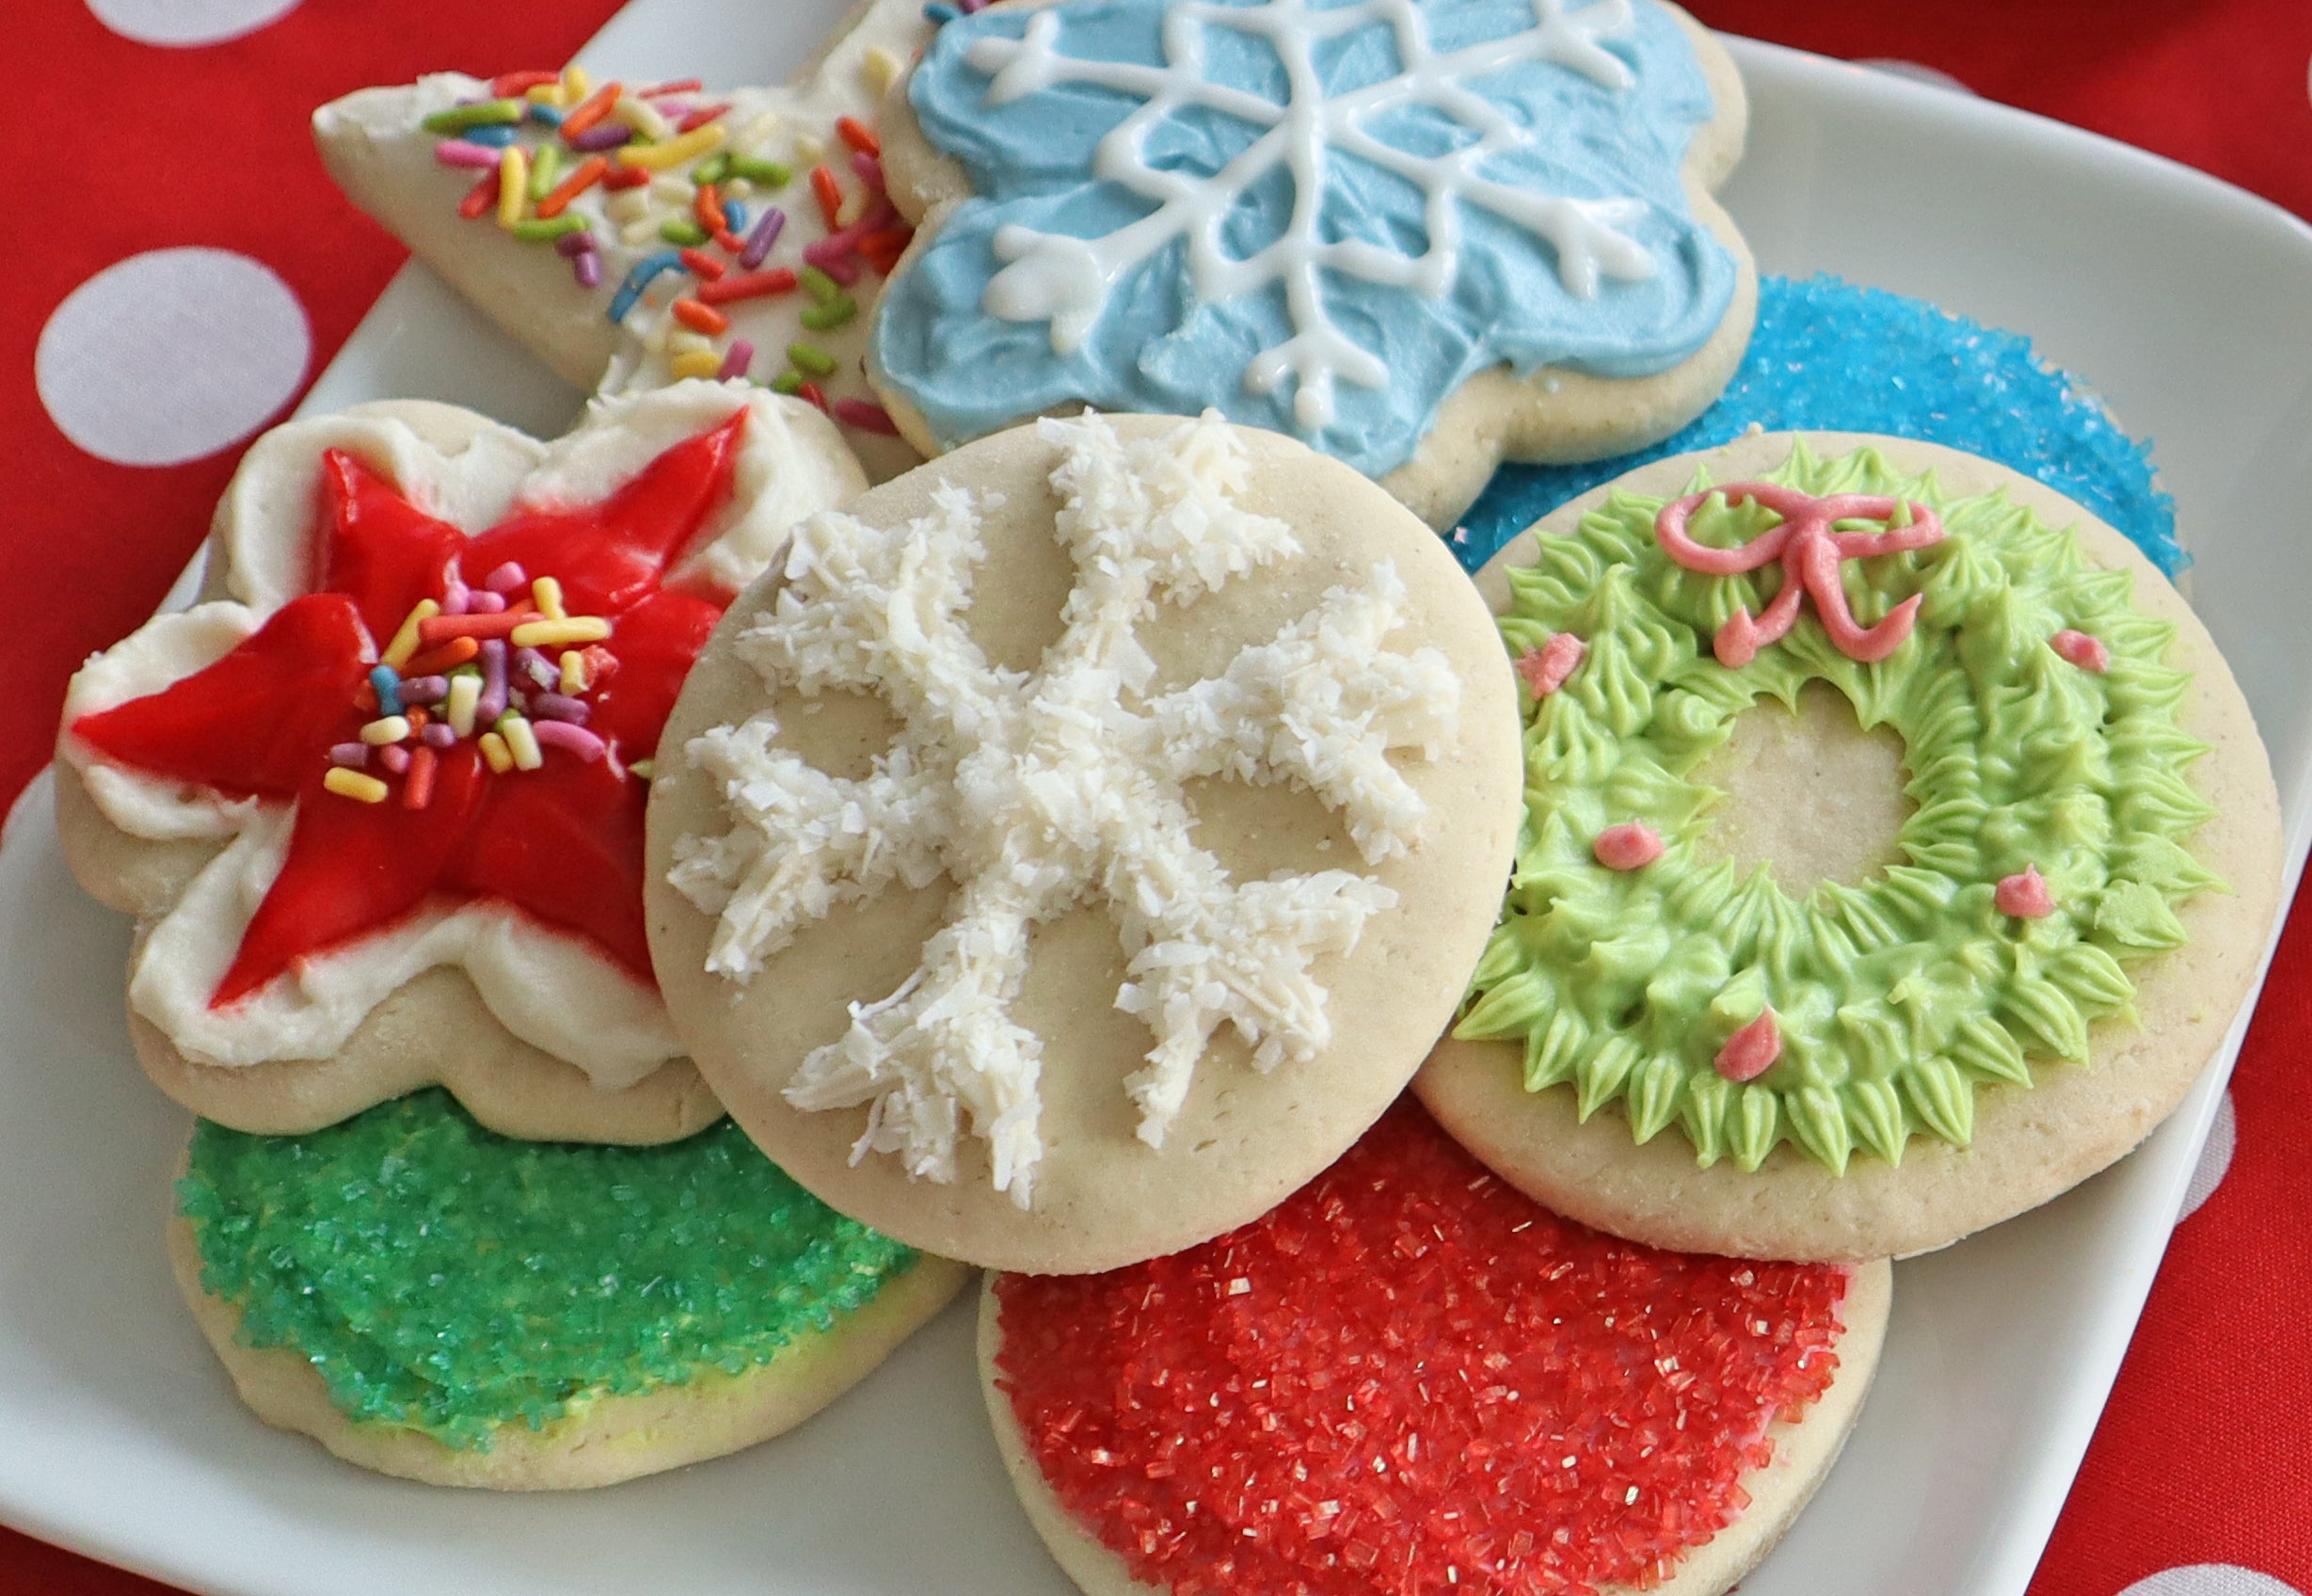 plate of sugar cookies